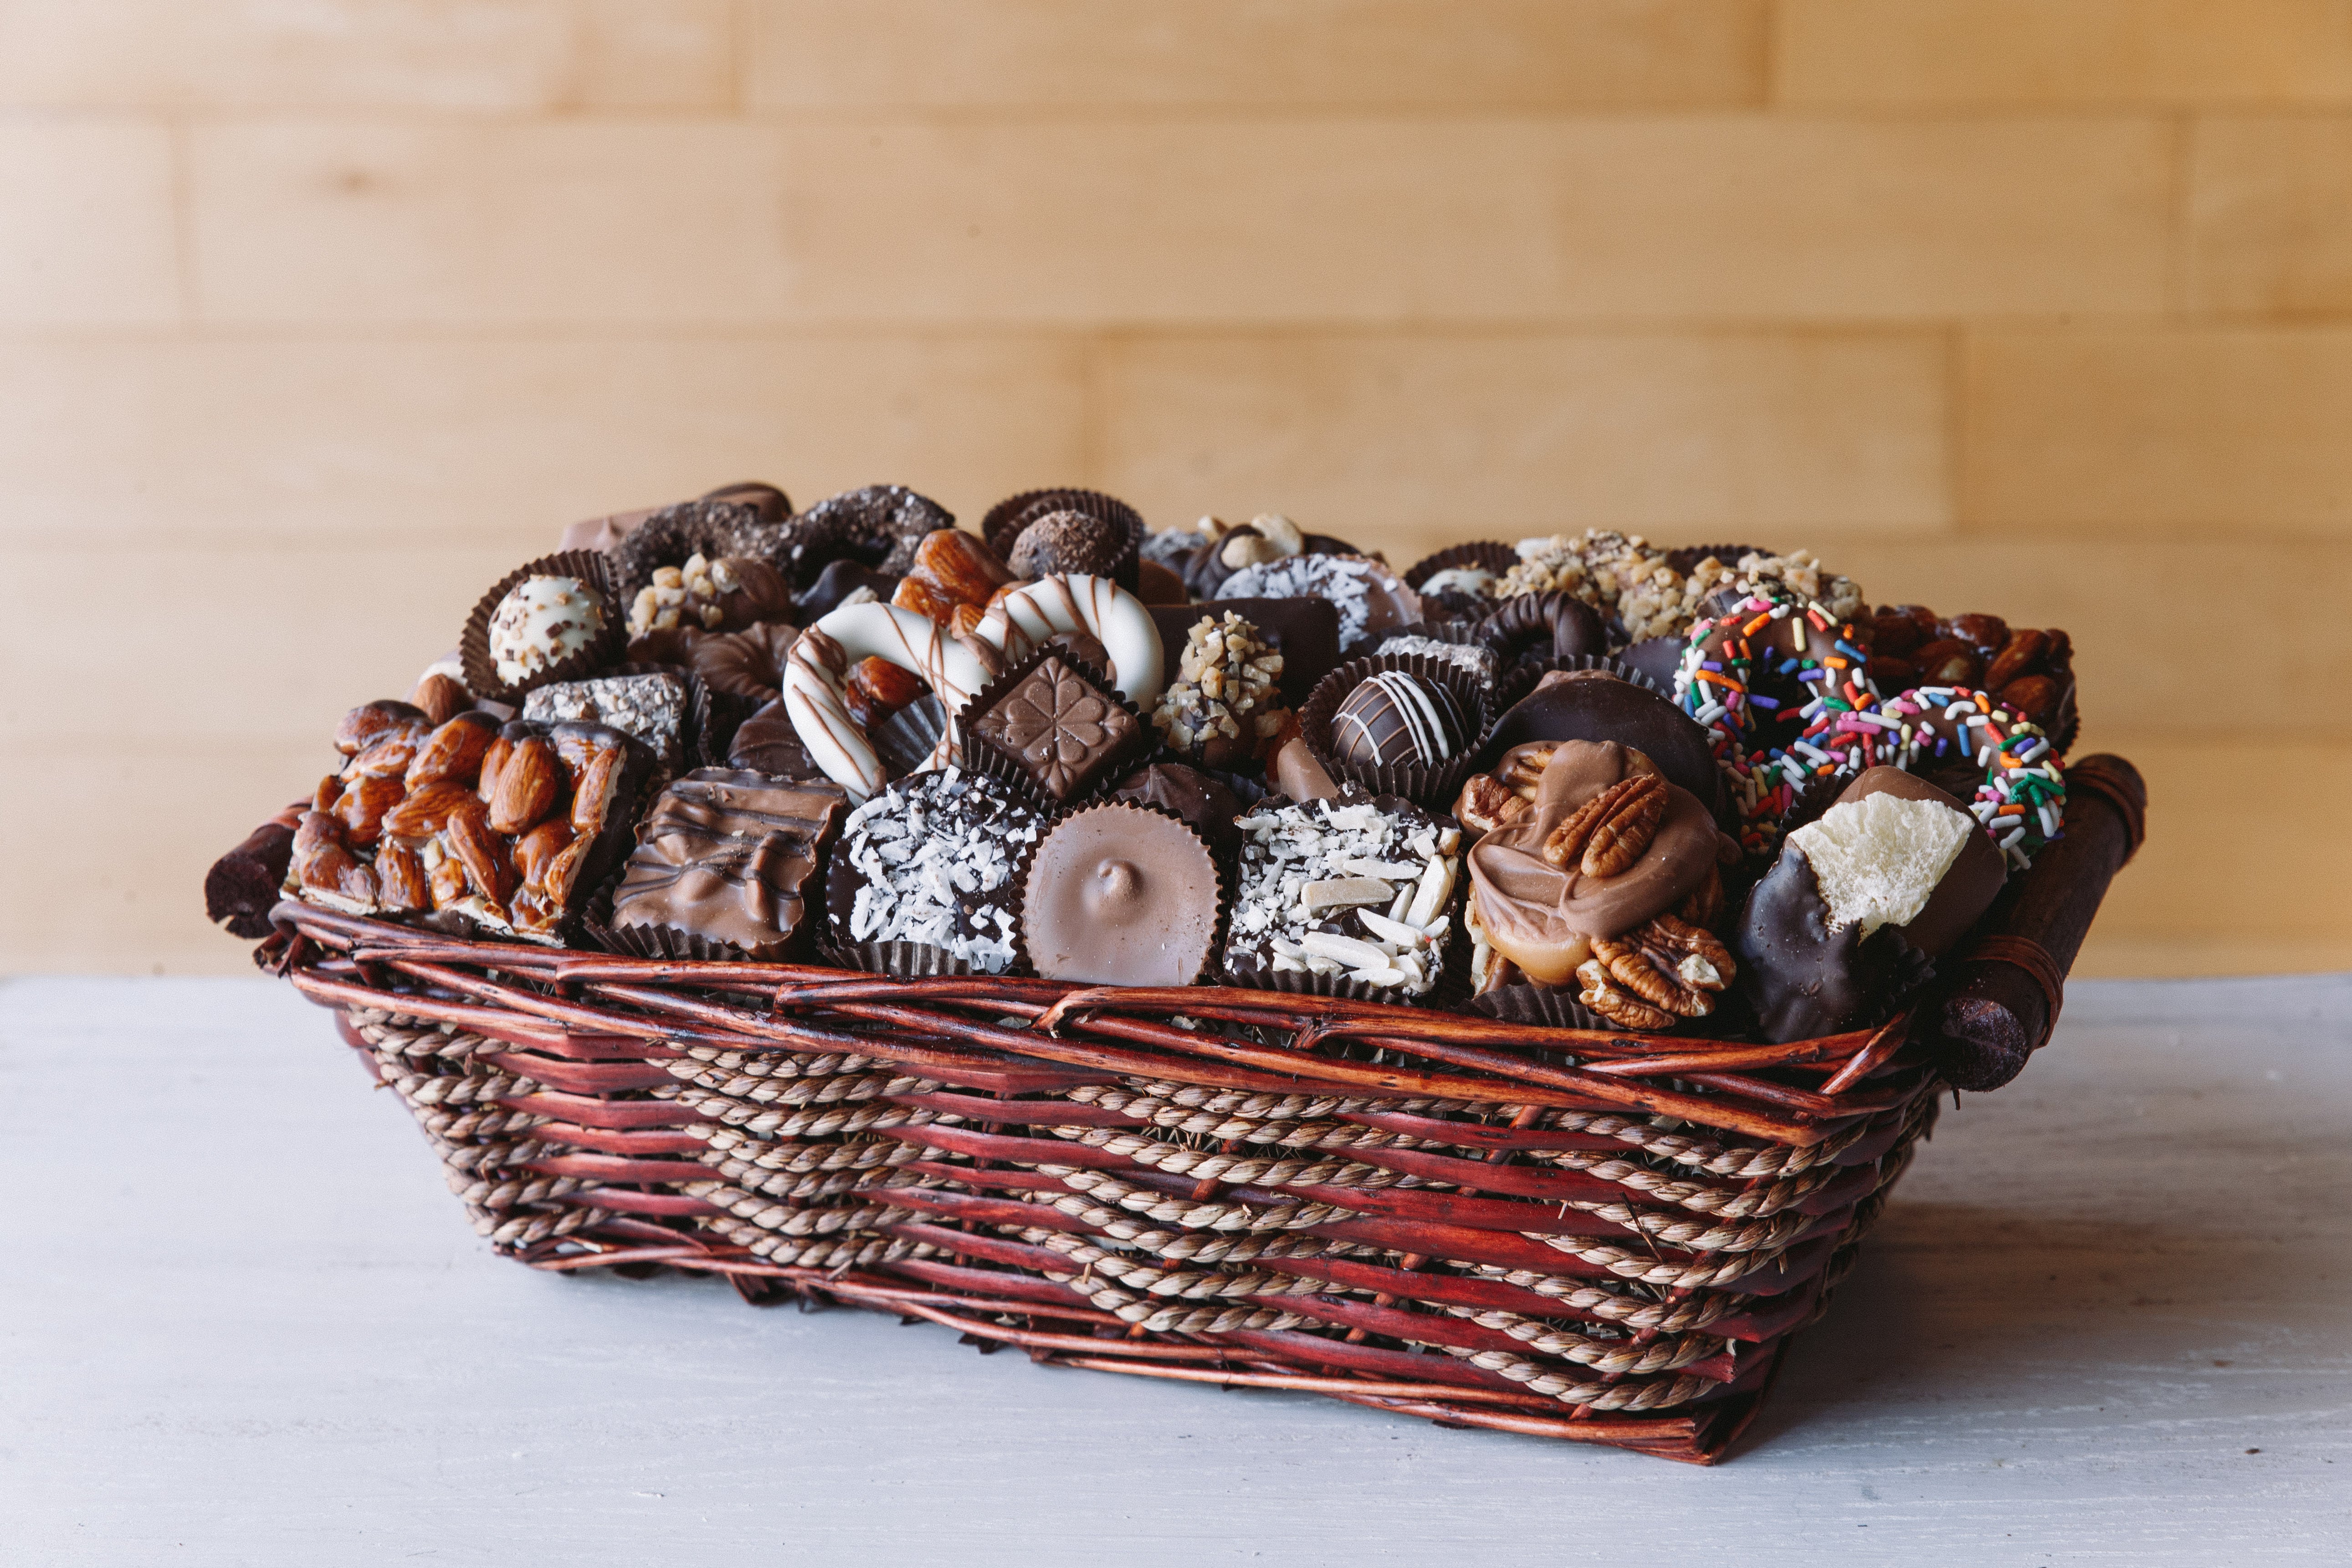 Order our vegan chocolate gift basket. — Sweet Vegan Chocolates